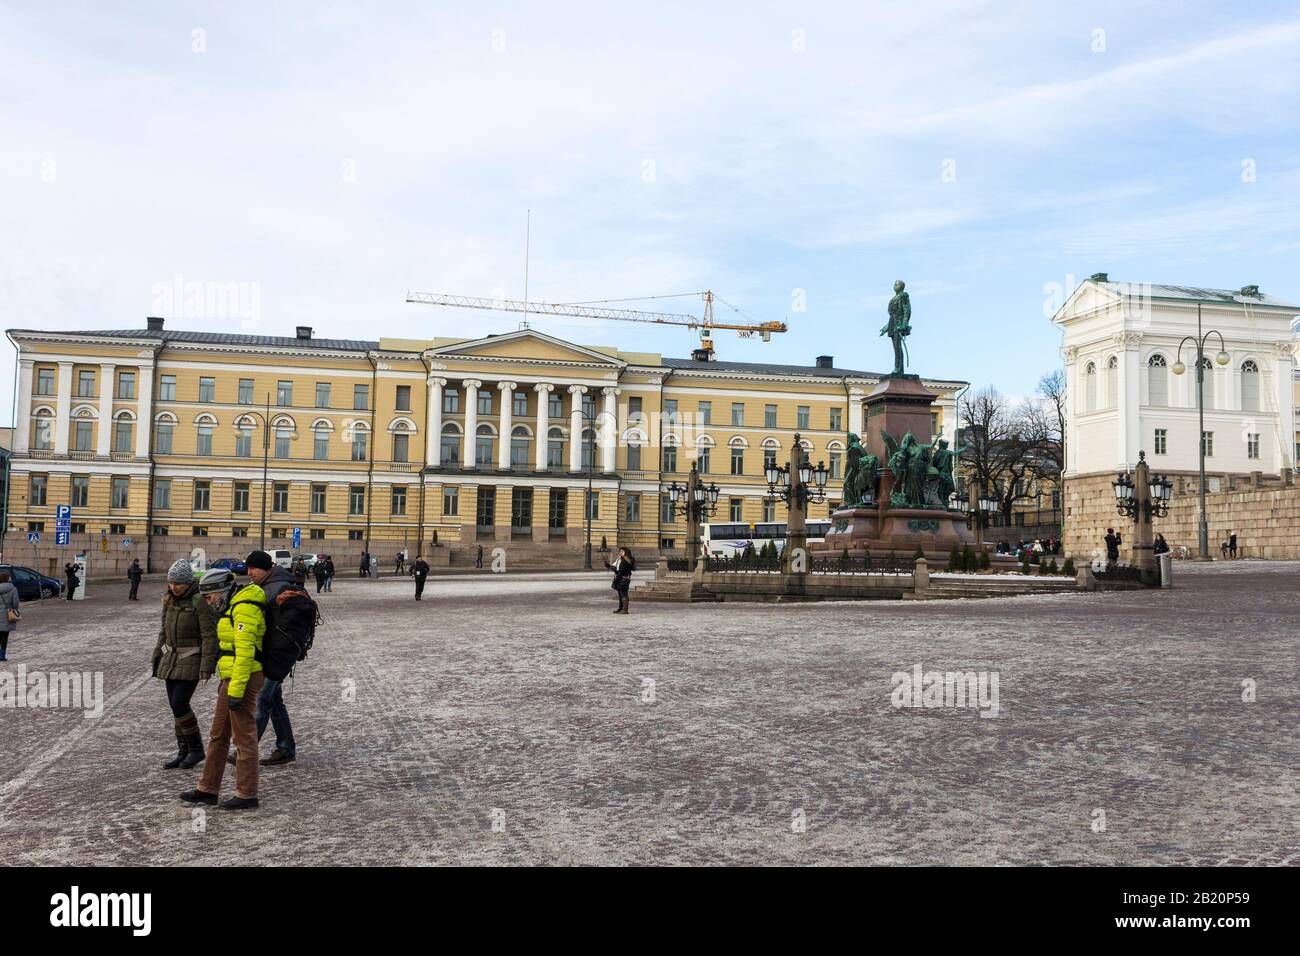 Helsinki, Finlandia. Piazza del Senato (Senaatintori), piazza pubblica con edifici neoclassici in una fredda giornata invernale, coperta di ghiaccio e neve Foto Stock